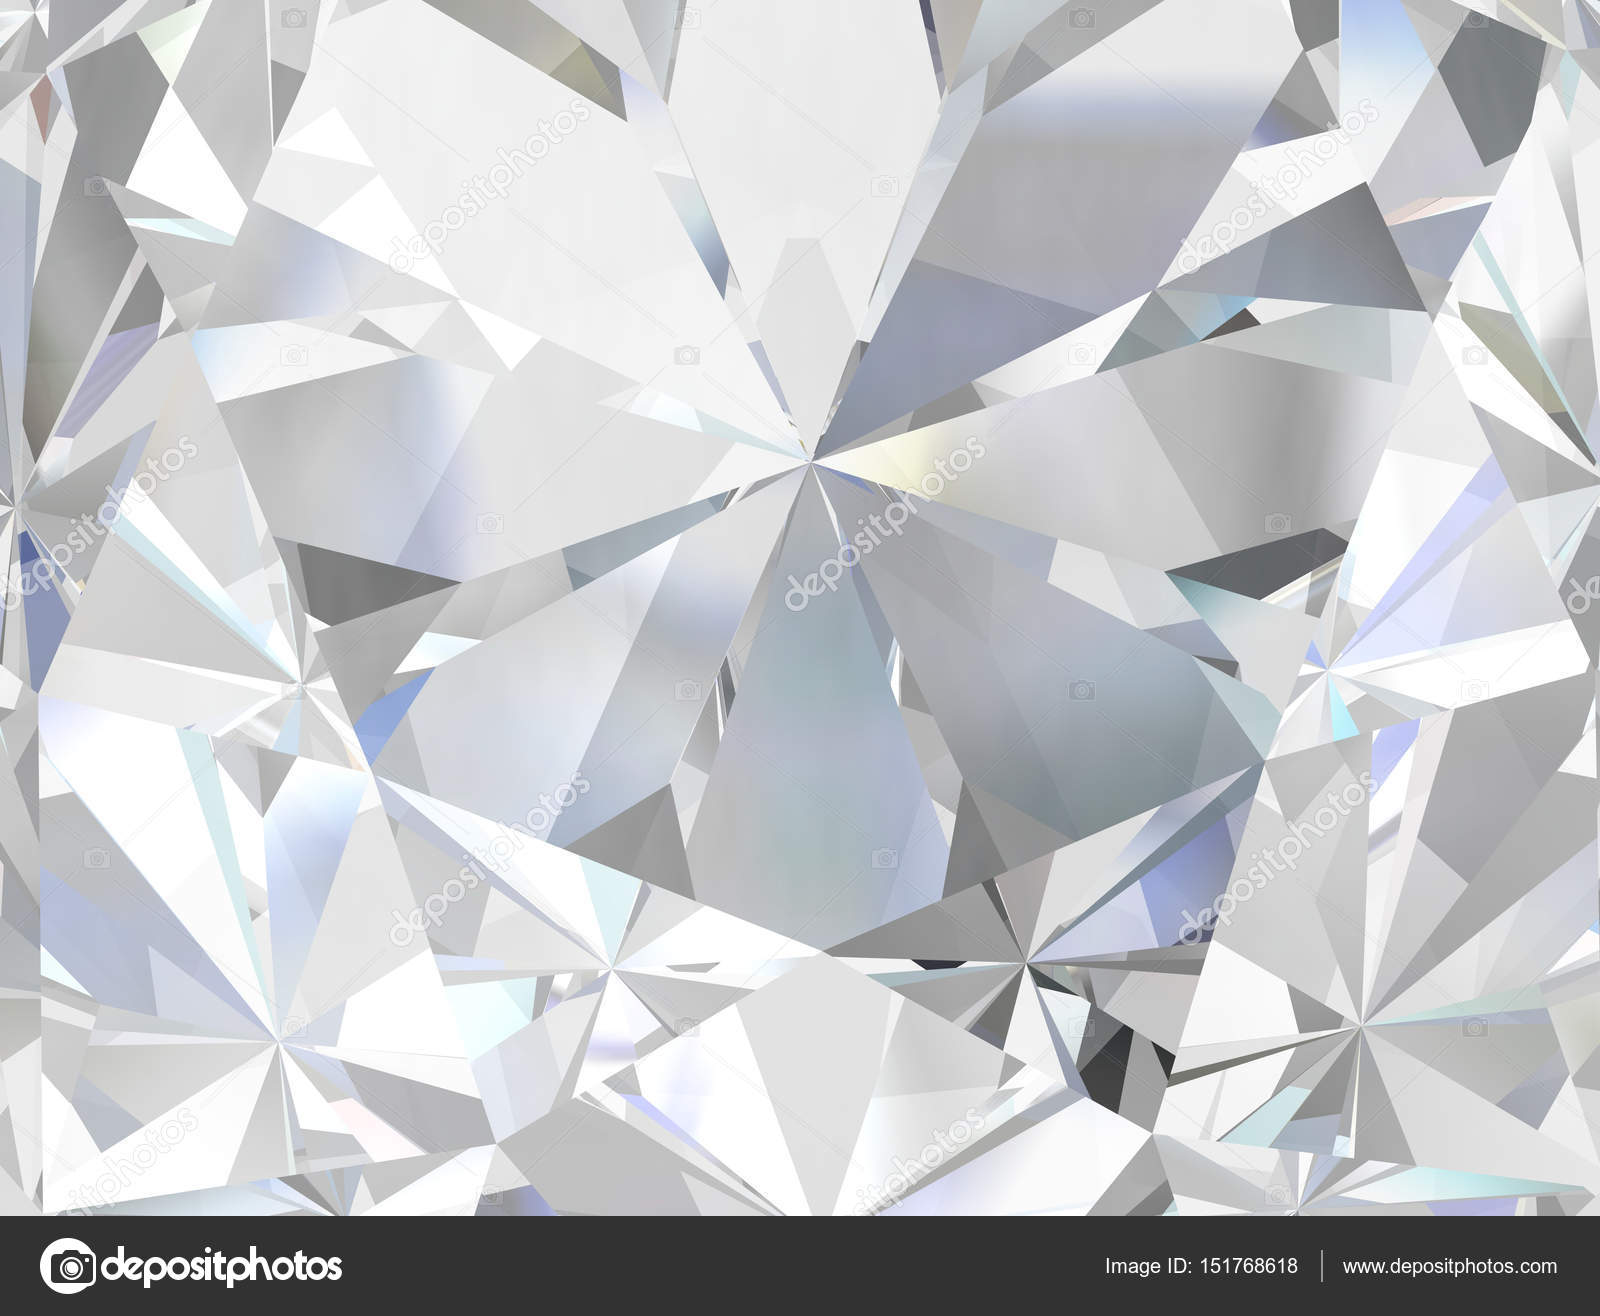 ダイヤモンド テクスチャ写真素材 ロイヤリティフリーダイヤモンド テクスチャ画像 Depositphotos